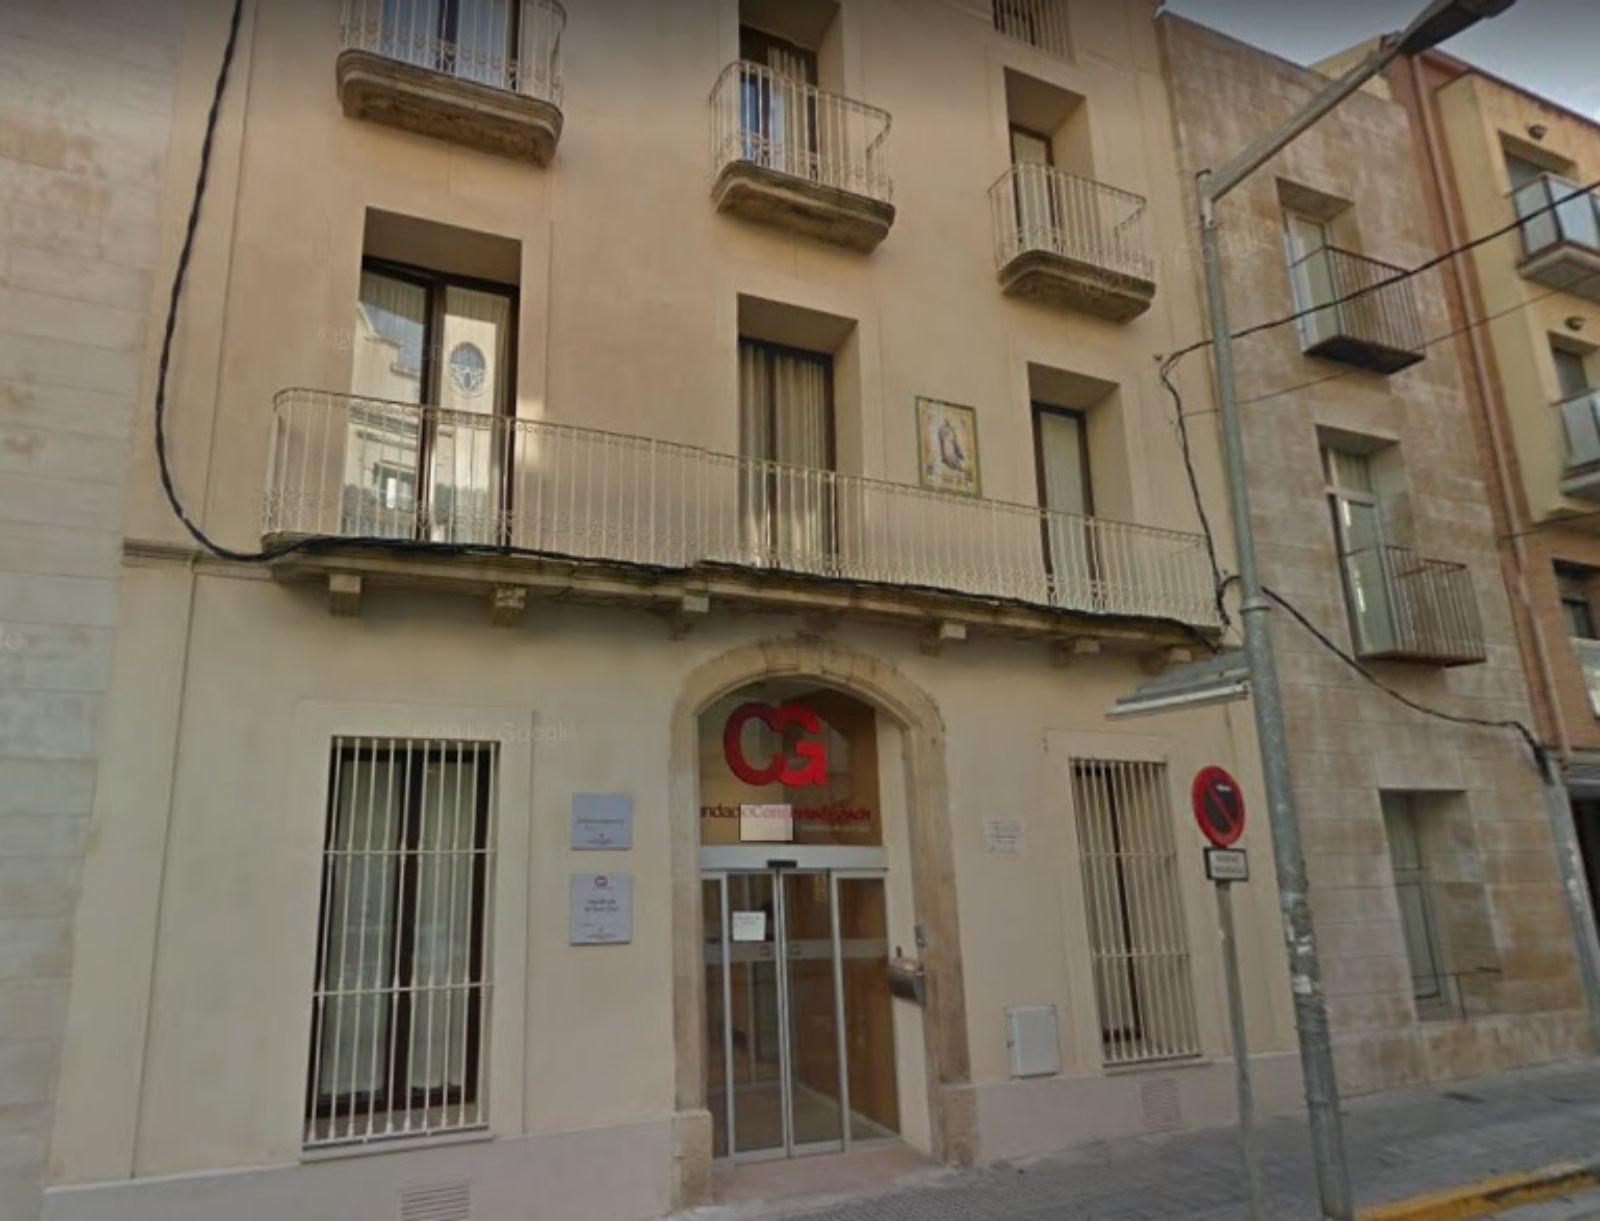 Las residencias en Cataluña también foco de coronavirus, mueren 18 mayores en un centro en Barcelona